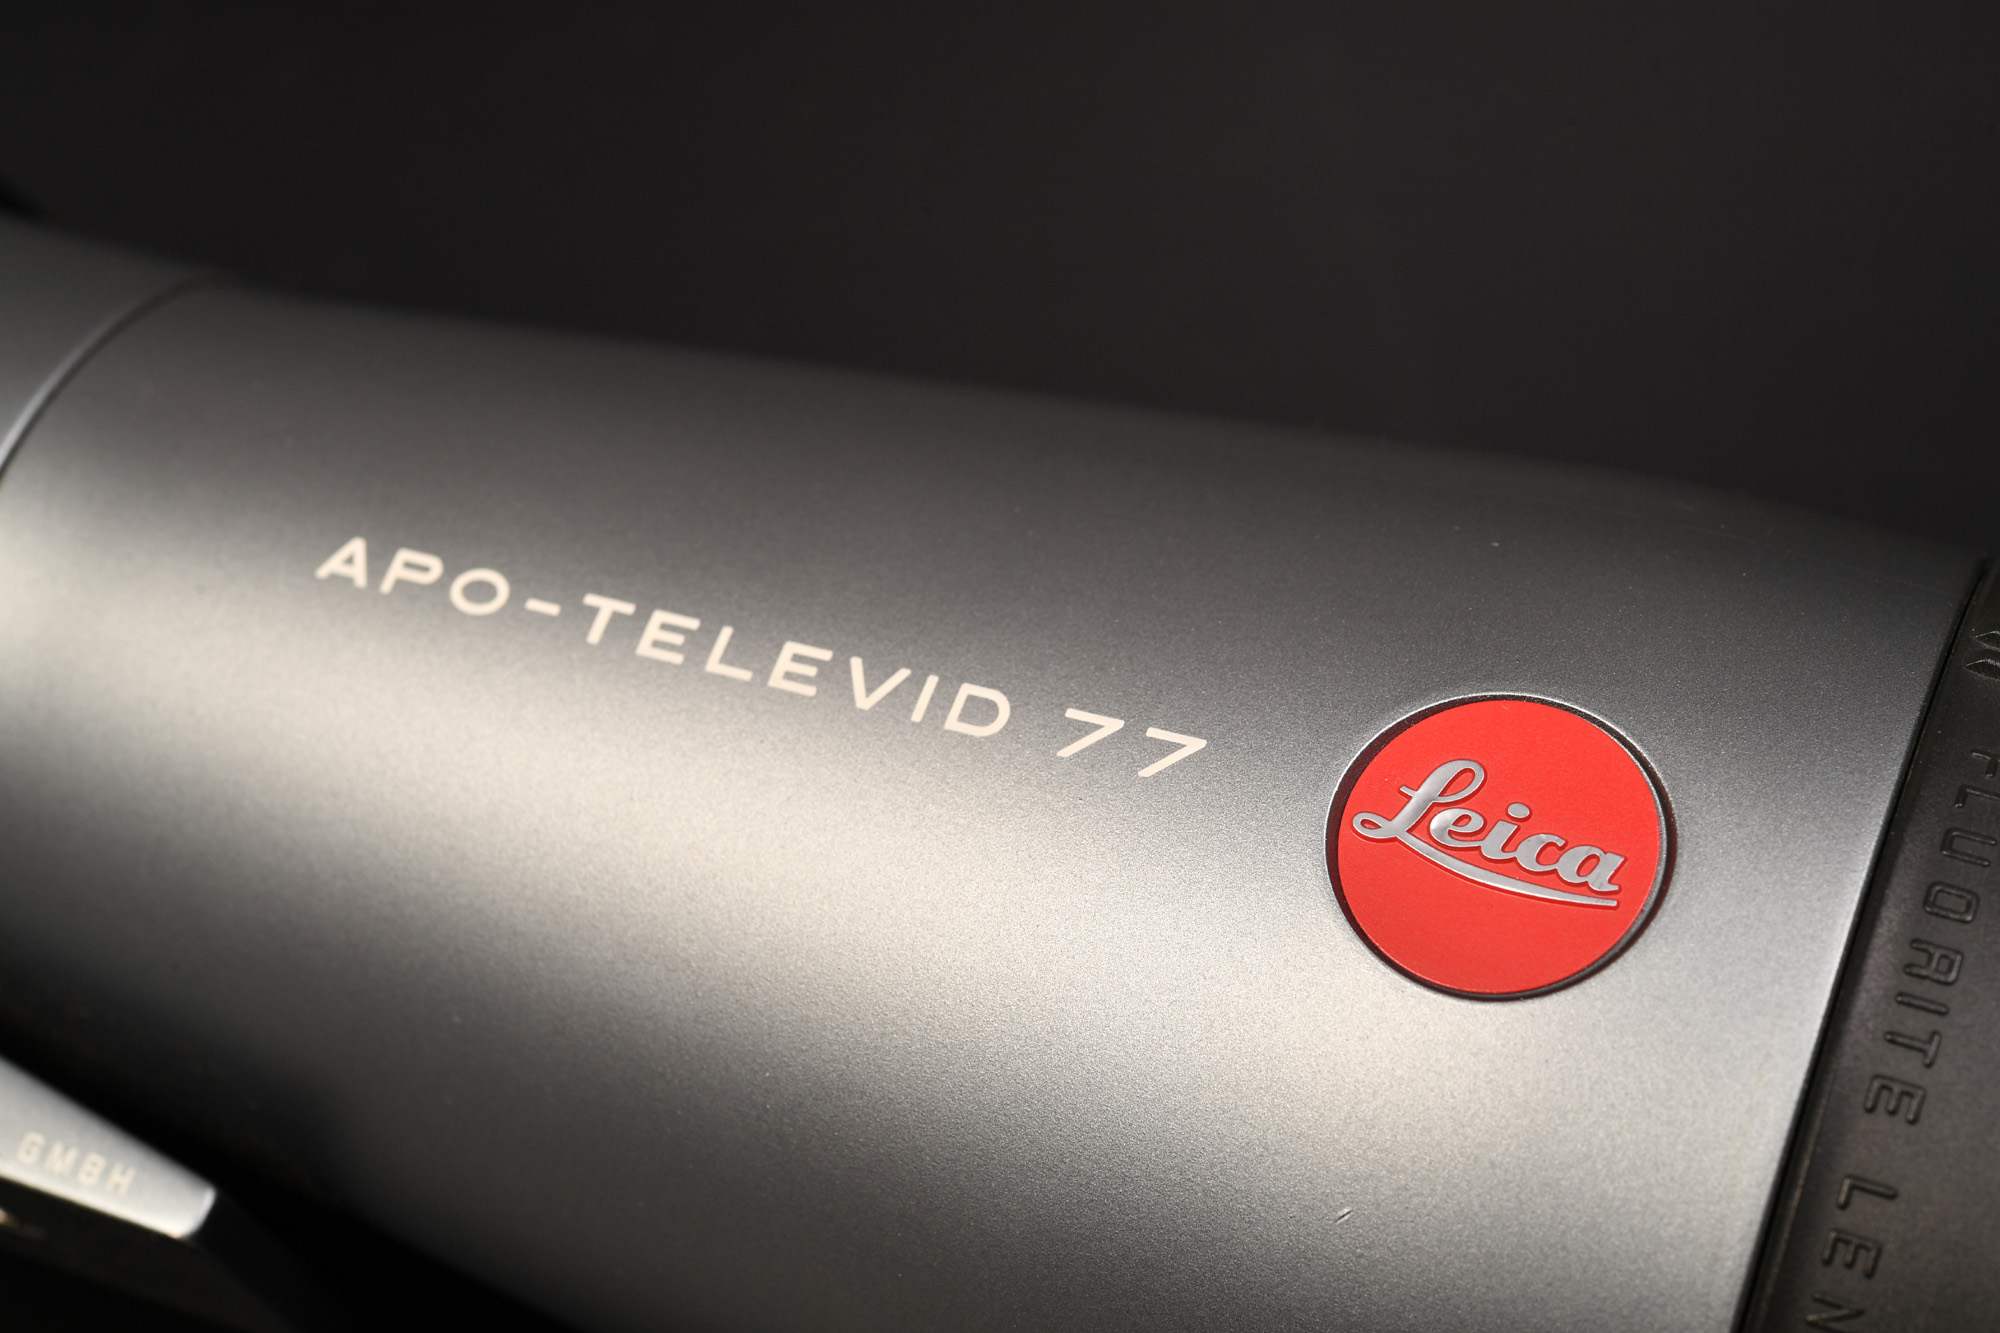 Leica ライカ APO-TELEVID 77 中古購入フィールドスコープ本日届きました。